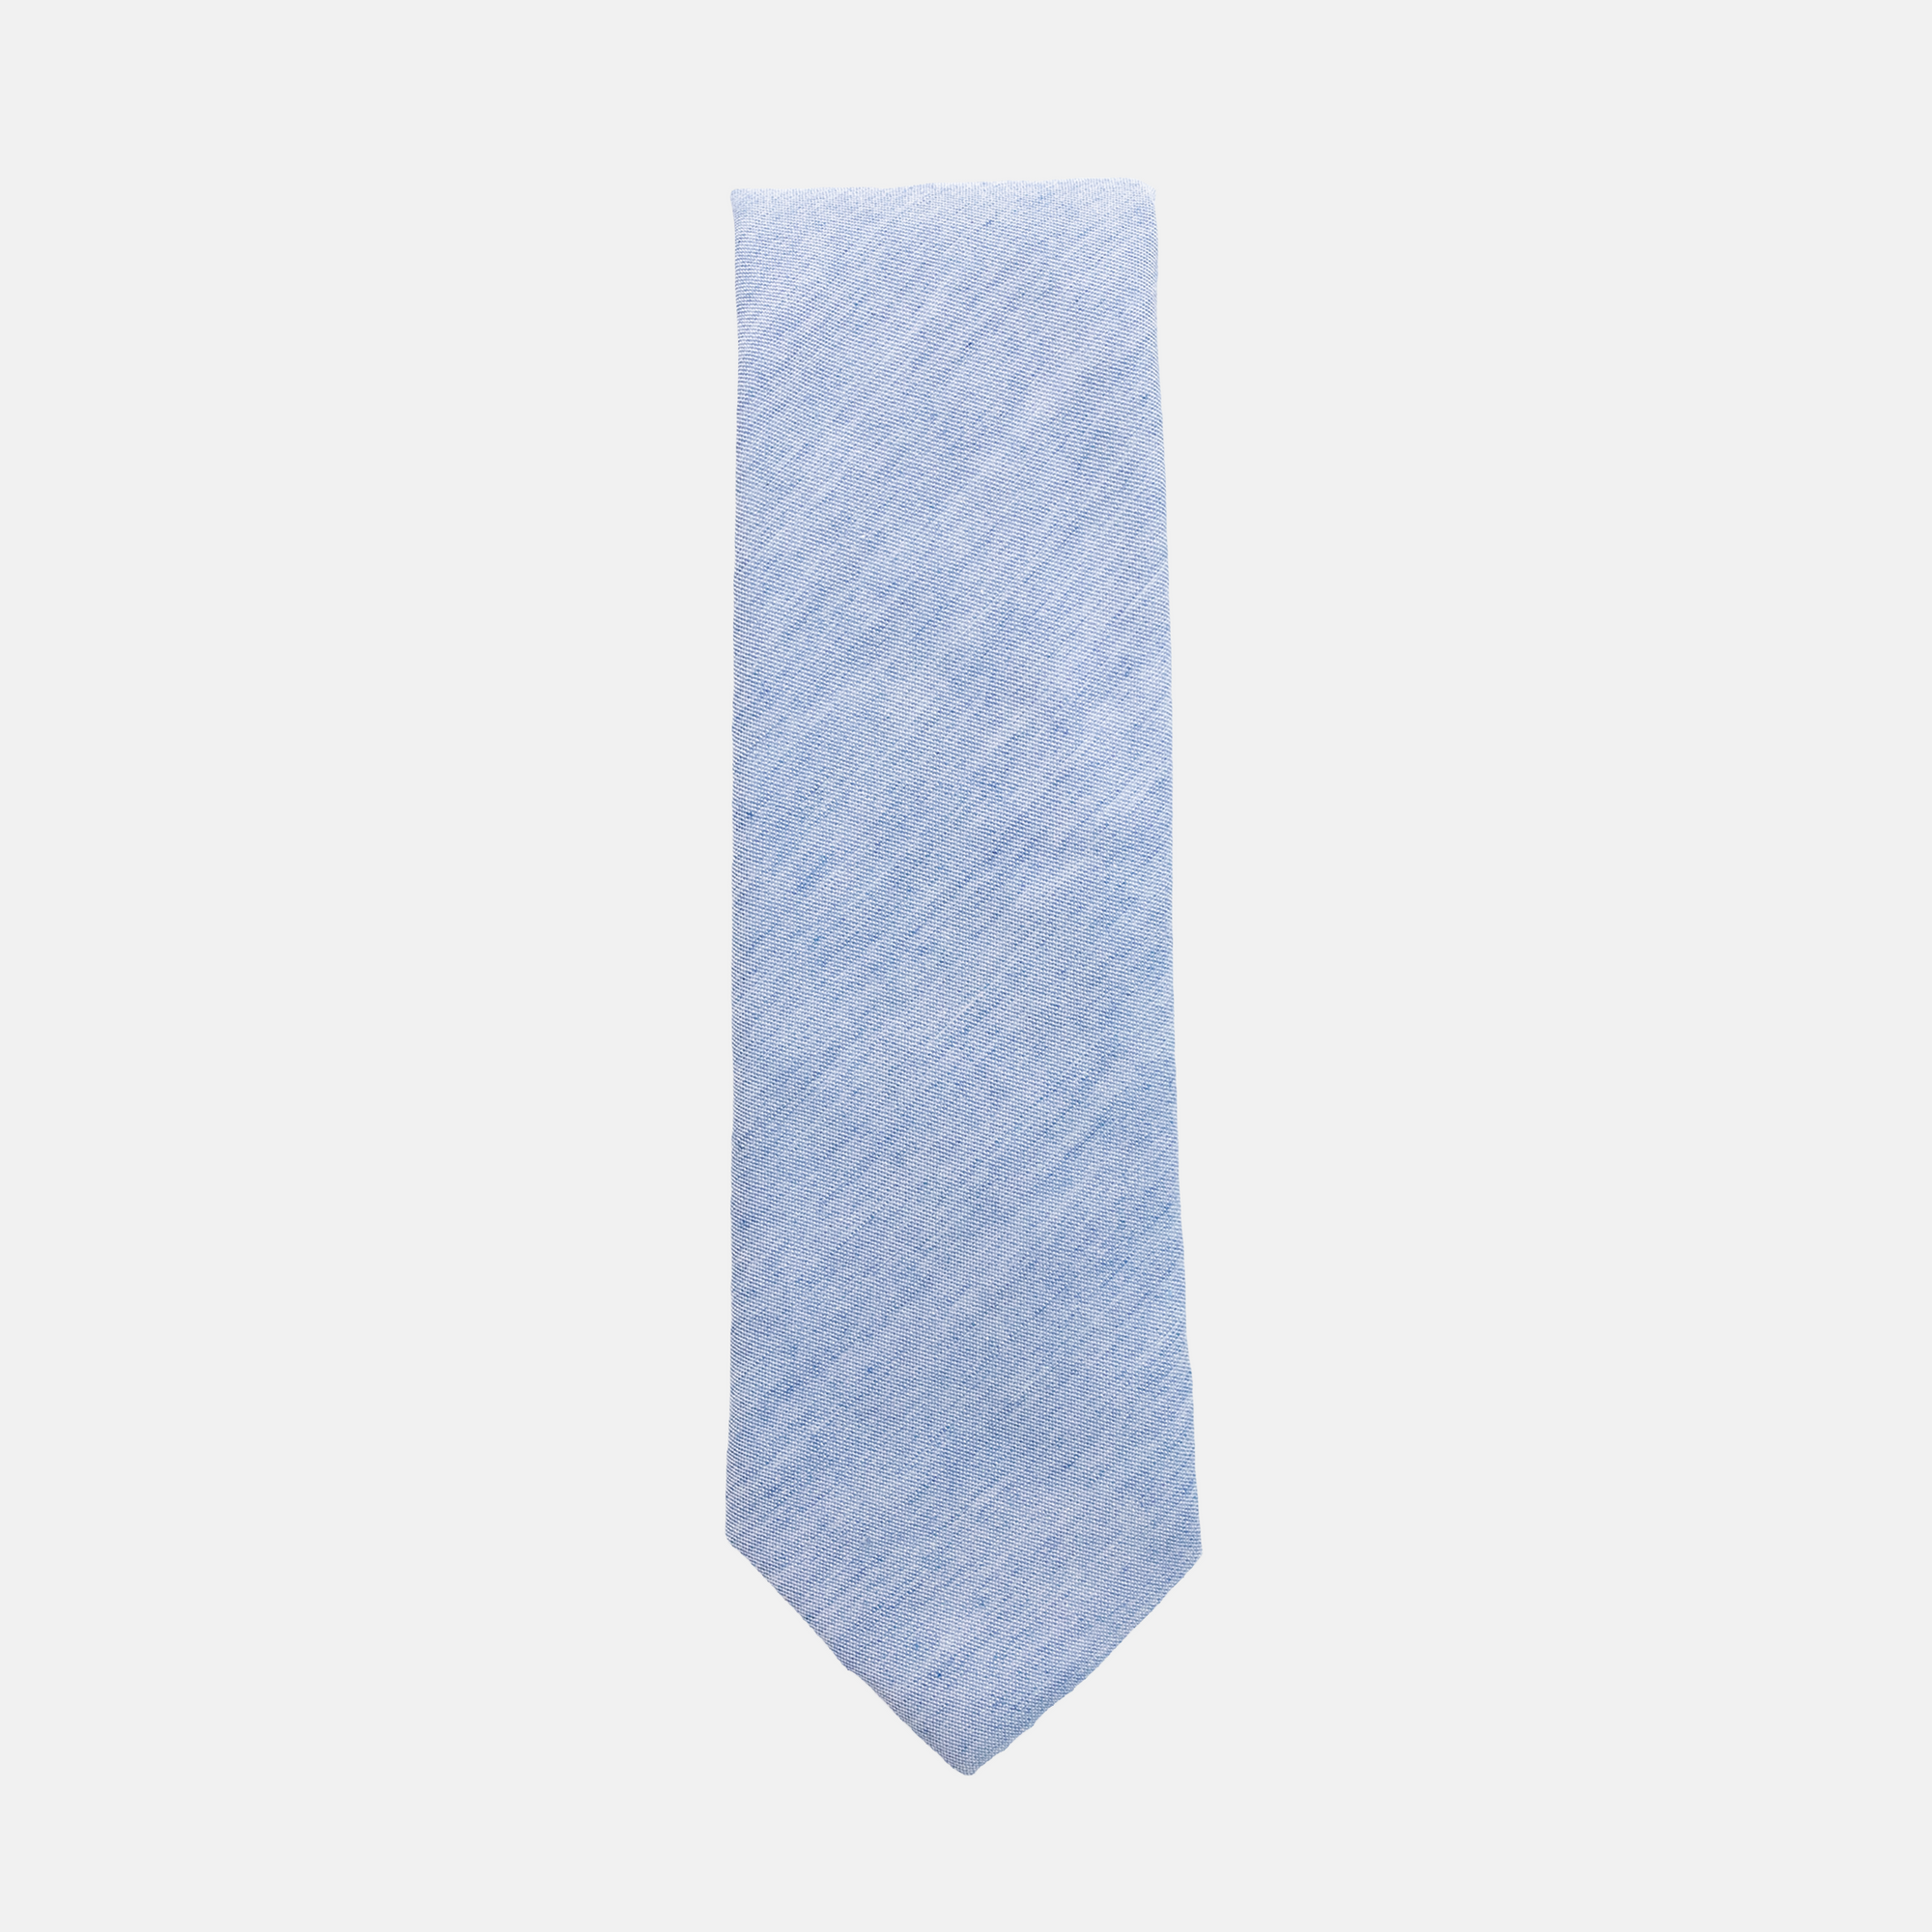 EMMETT - Men's Tie